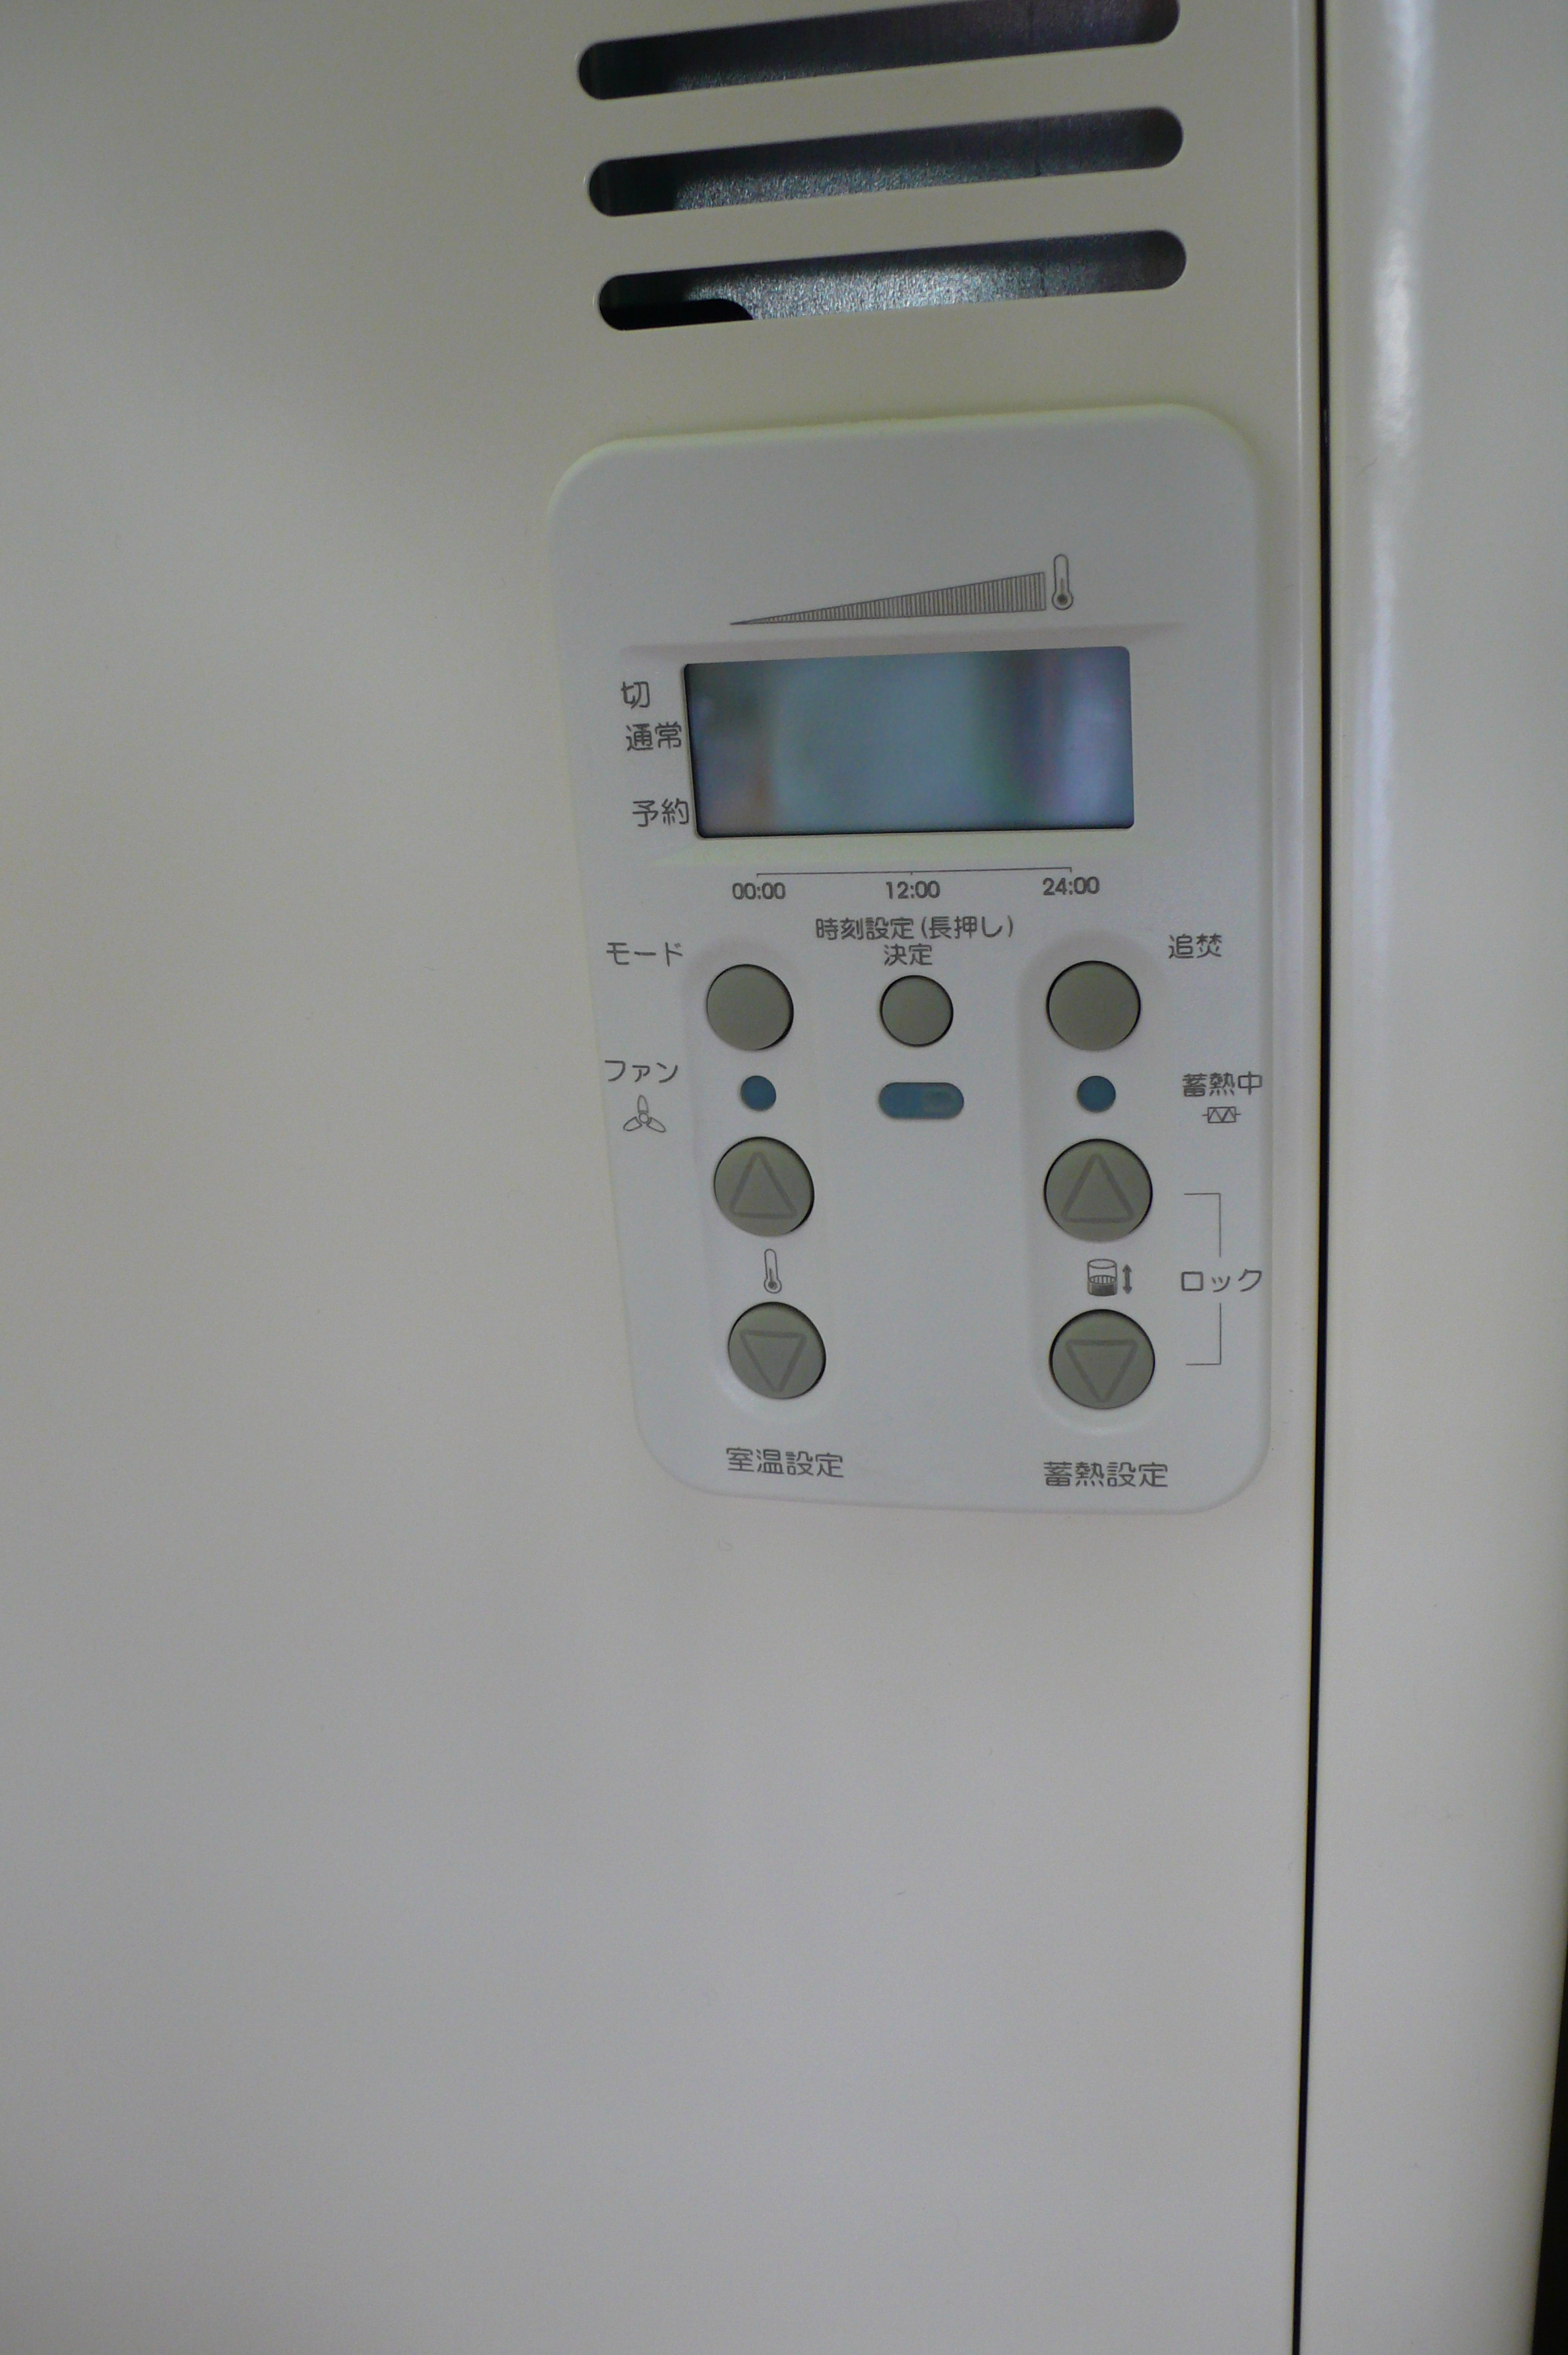 マイコン制御により、前の日の残熱量がある時は  蓄熱時間をコントロールして、無駄な電力消費を抑えます。